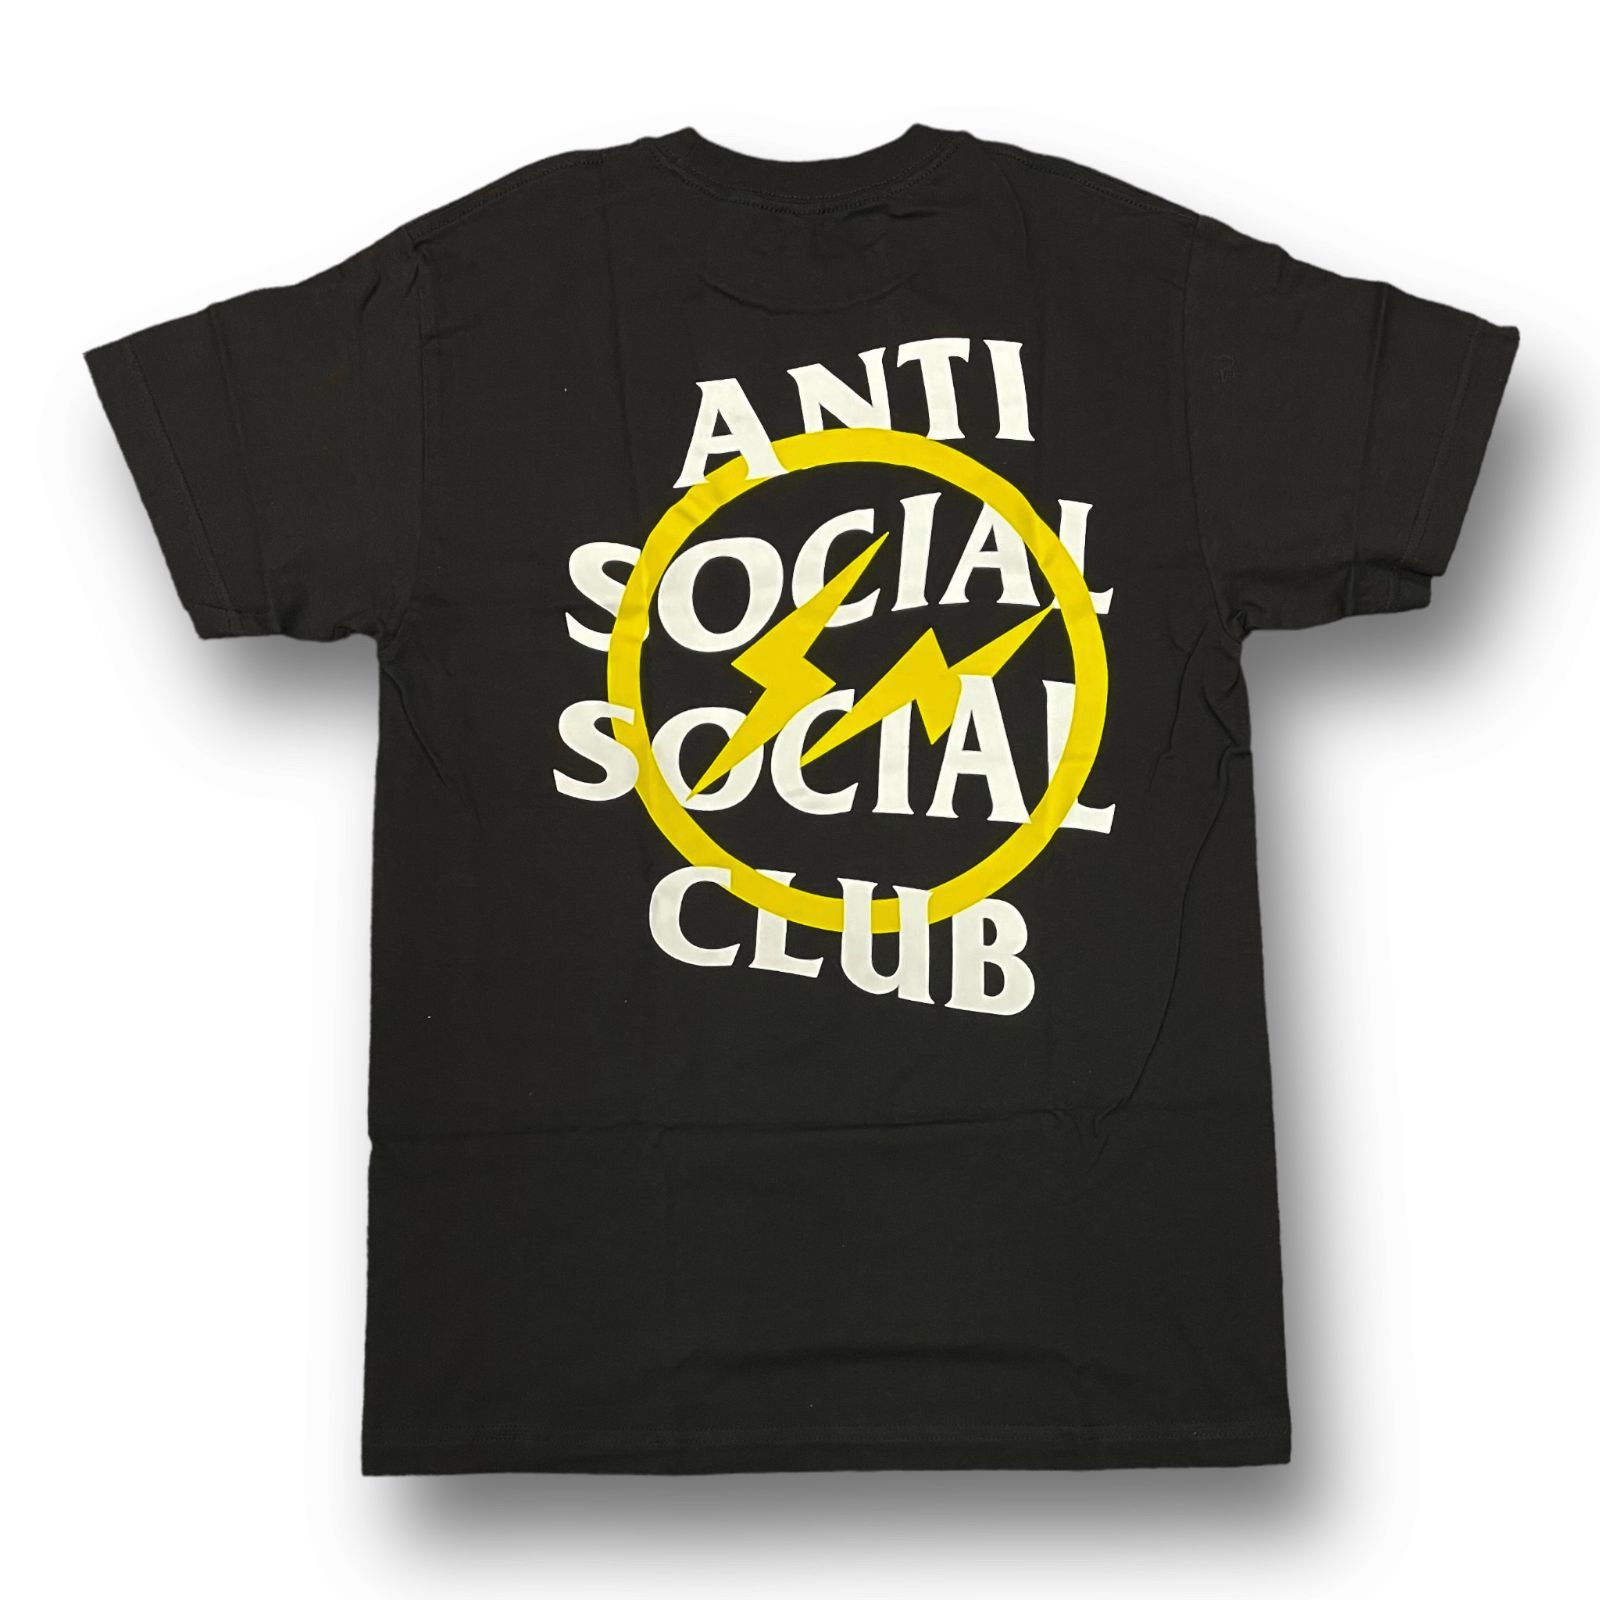 新品 Fragment design ANTI SOCIAL SOCIAL CLUB コラボ サンダーボルト プリント Tシャツ フラグメント  アンチソーシャルソーシャルクラブ M